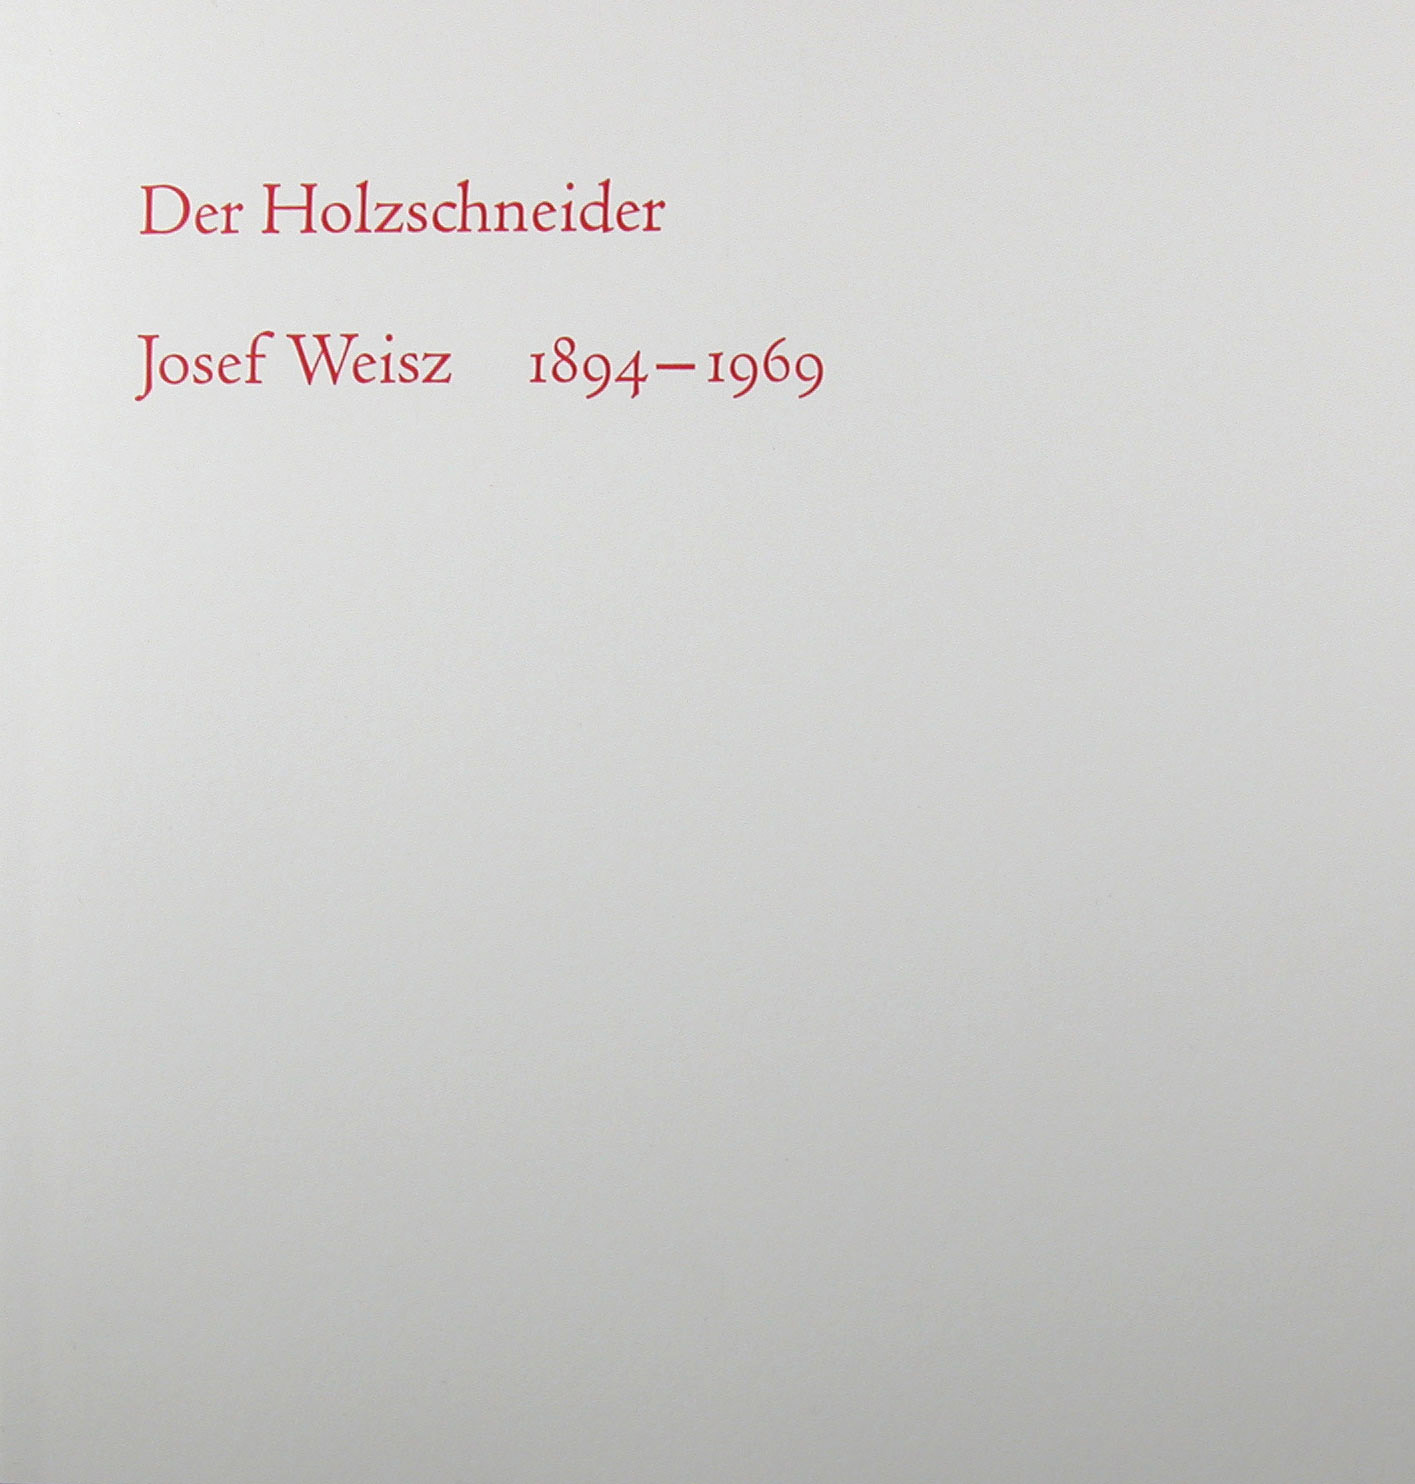 Der Holzschneider Josef Weisz 1894-1969